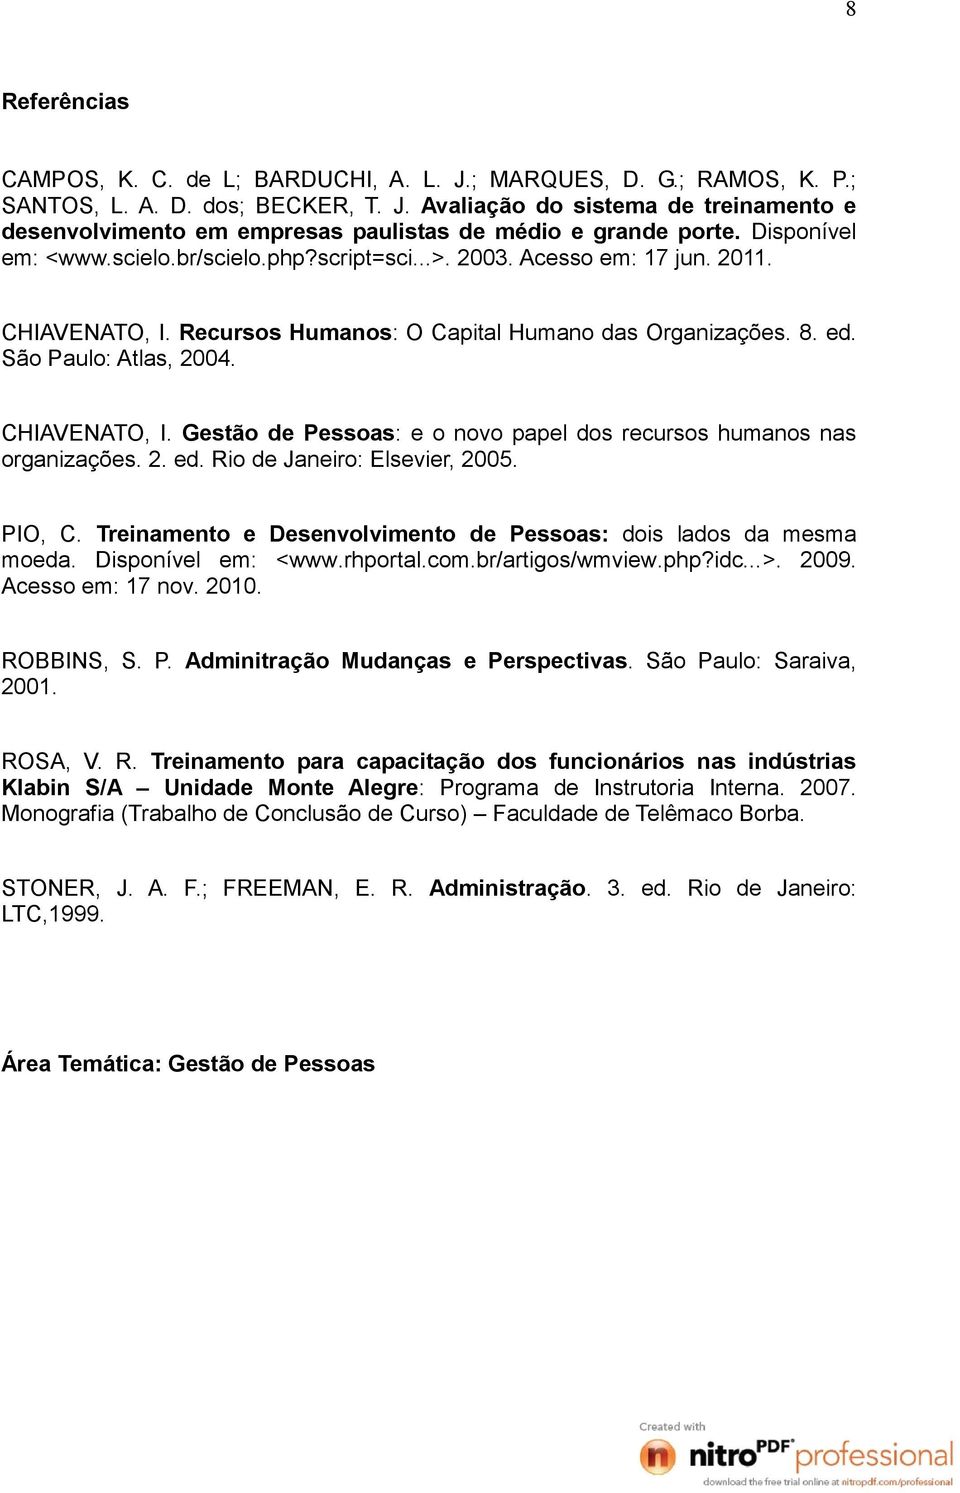 CHIAVENATO, I. Gestão de Pessoas: e o novo papel dos recursos humanos nas organizações. 2. ed. Rio de Janeiro: Elsevier, 2005. PIO, C.